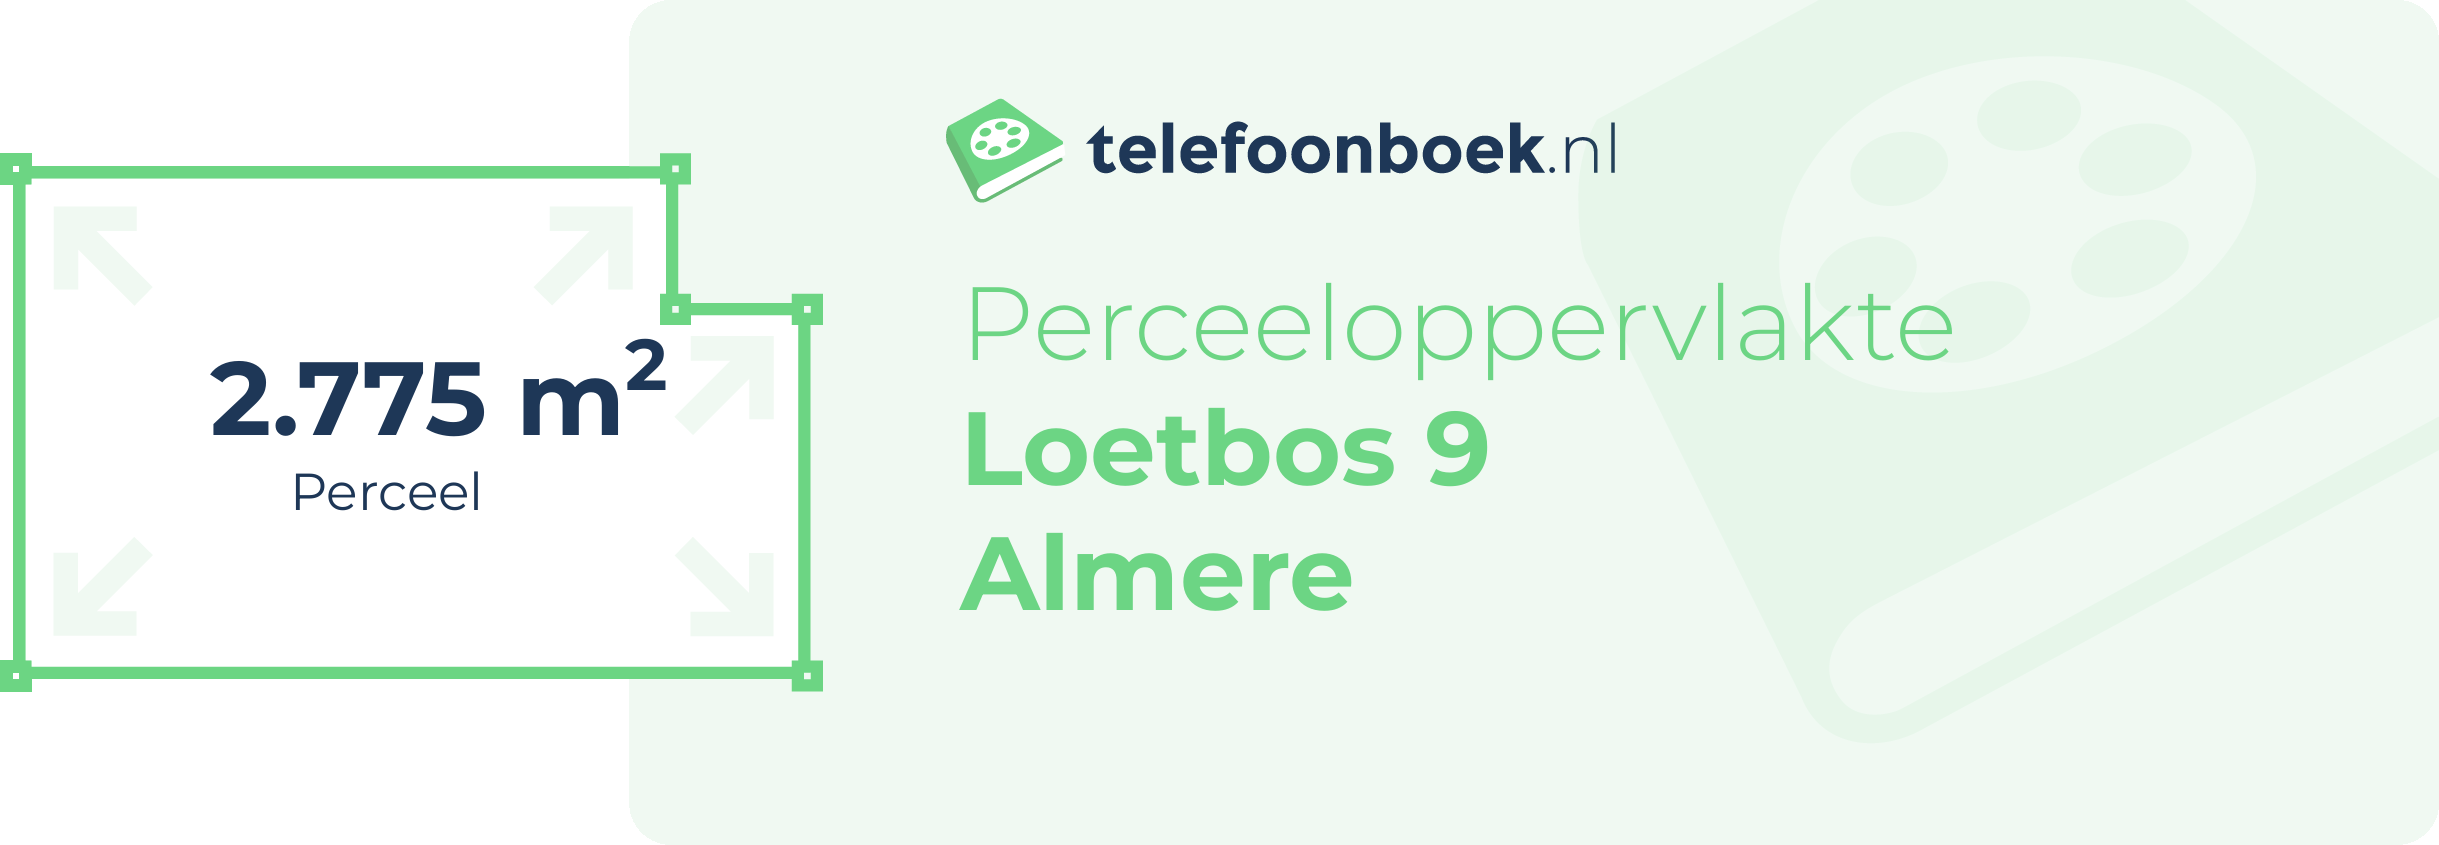 Perceeloppervlakte Loetbos 9 Almere